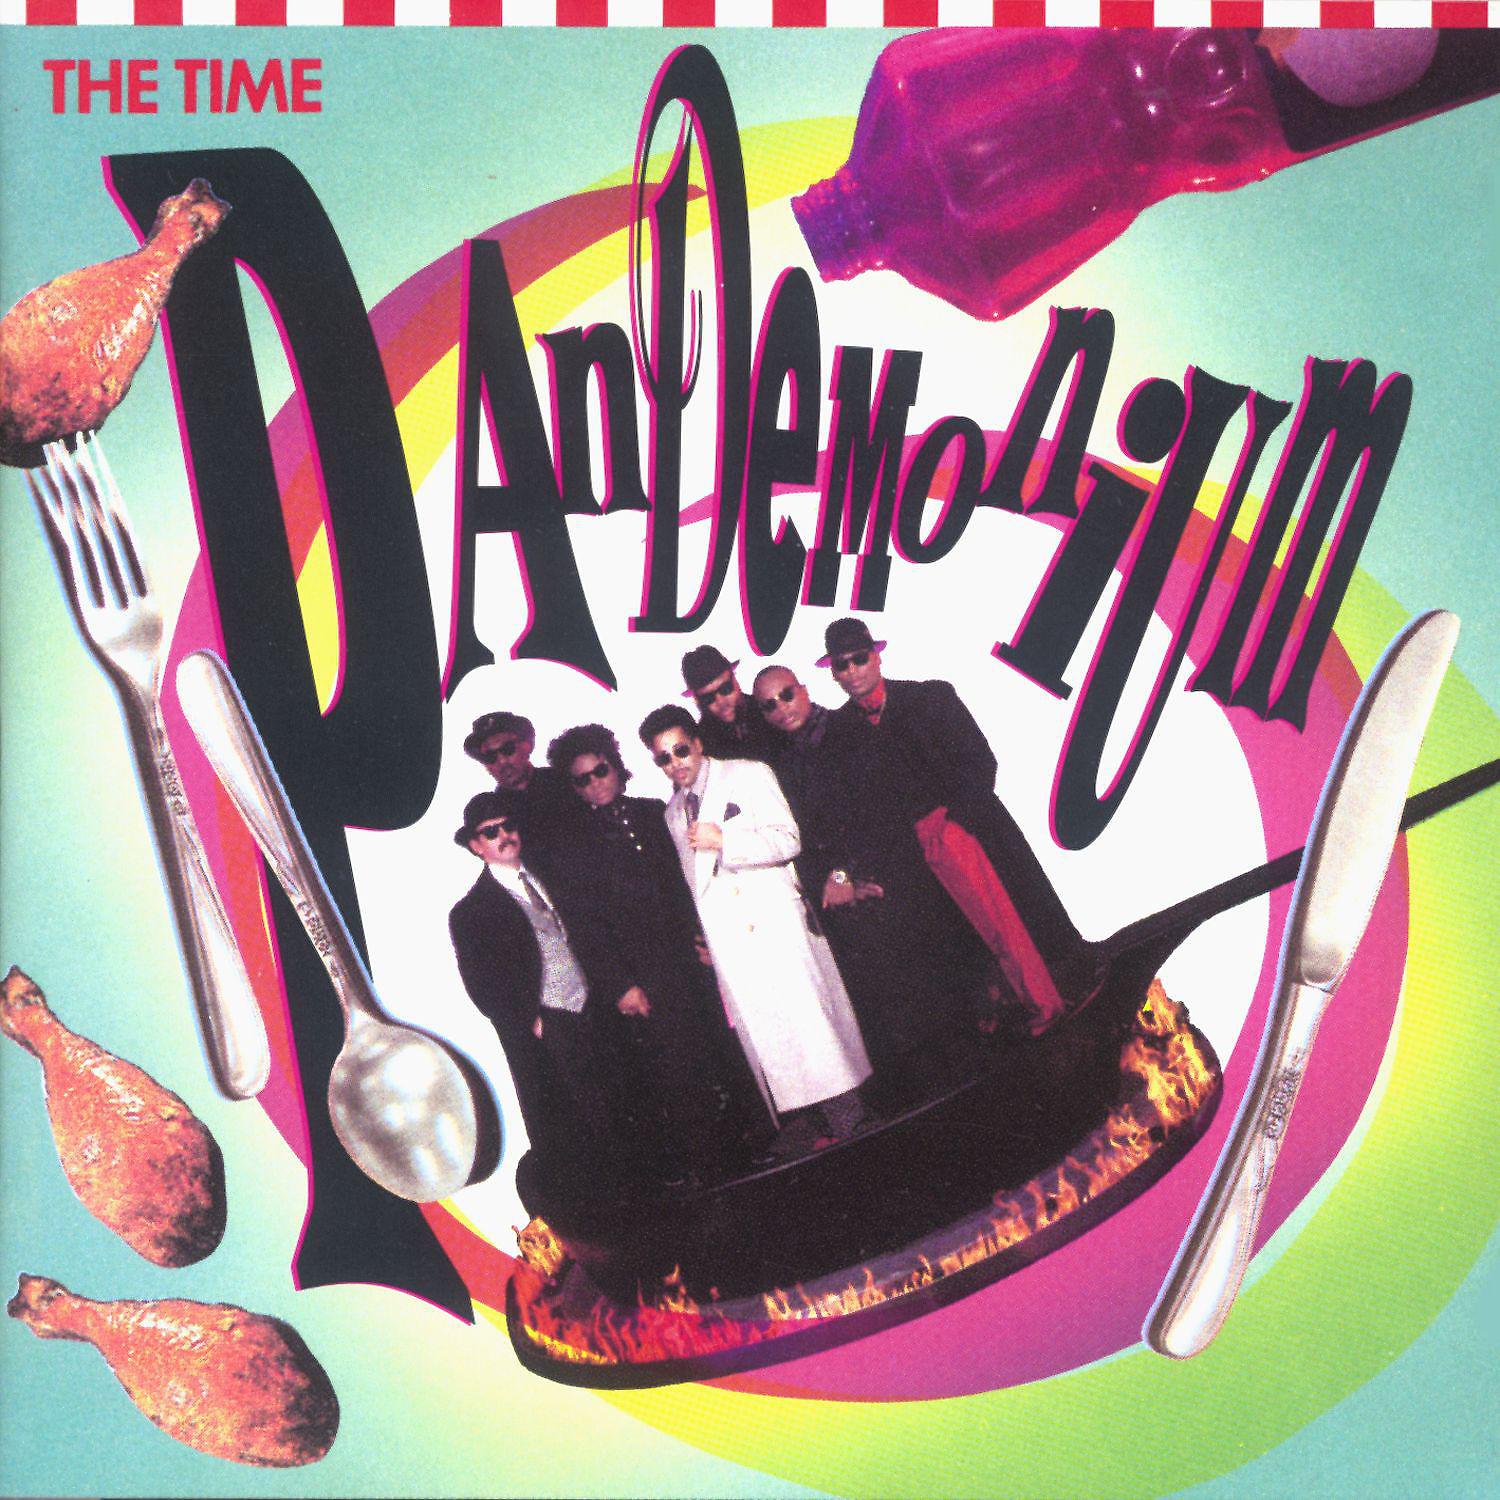 Постер альбома Pandemonium